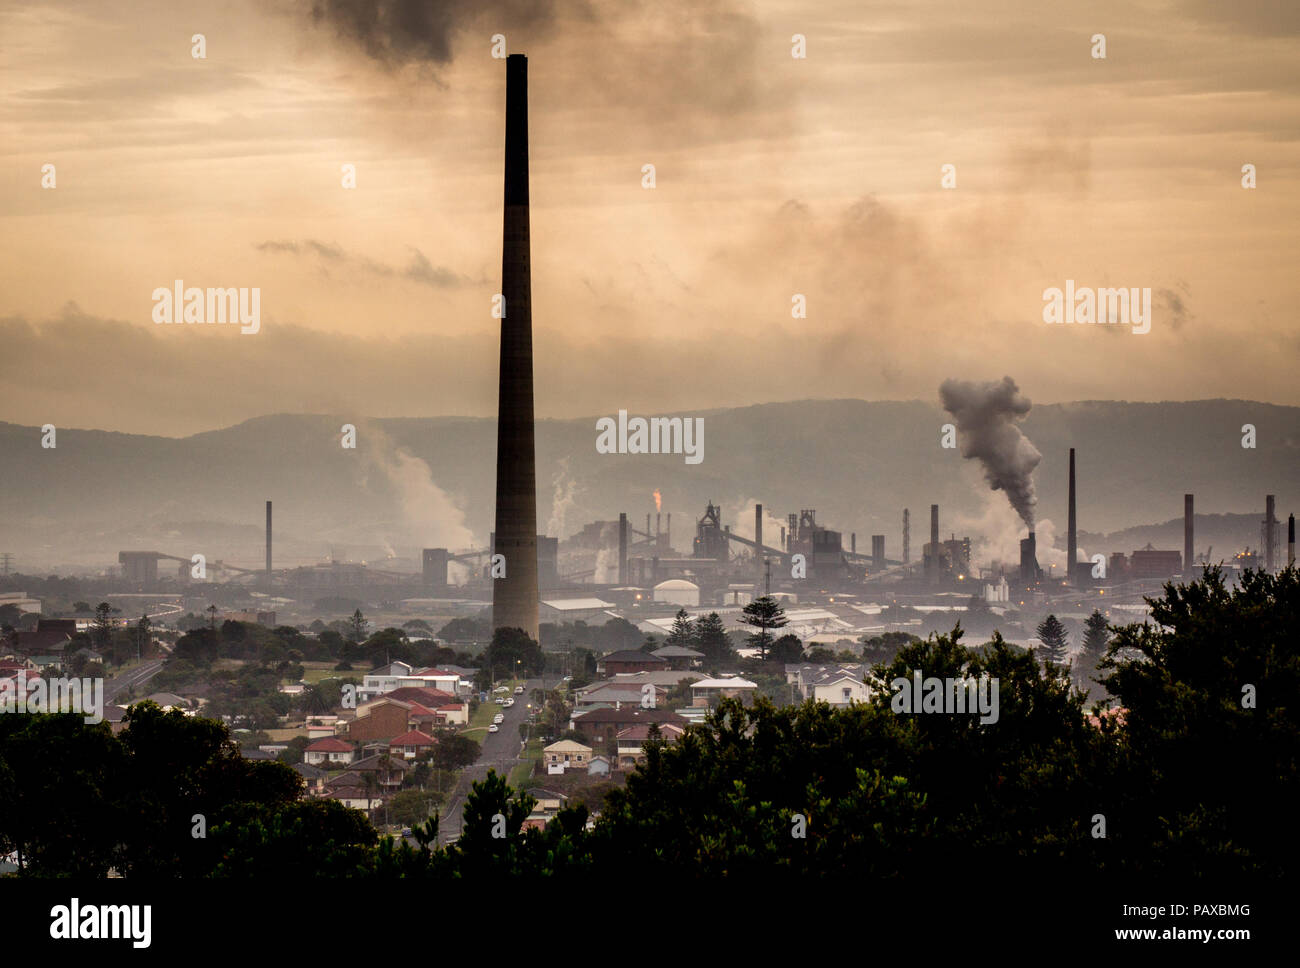 Notion de changement climatique des paysages industriels avec des cheminées montrant les émissions de fumée et de vapeur à partir de travaux industriels, Port Kembla, NSW Australie Banque D'Images